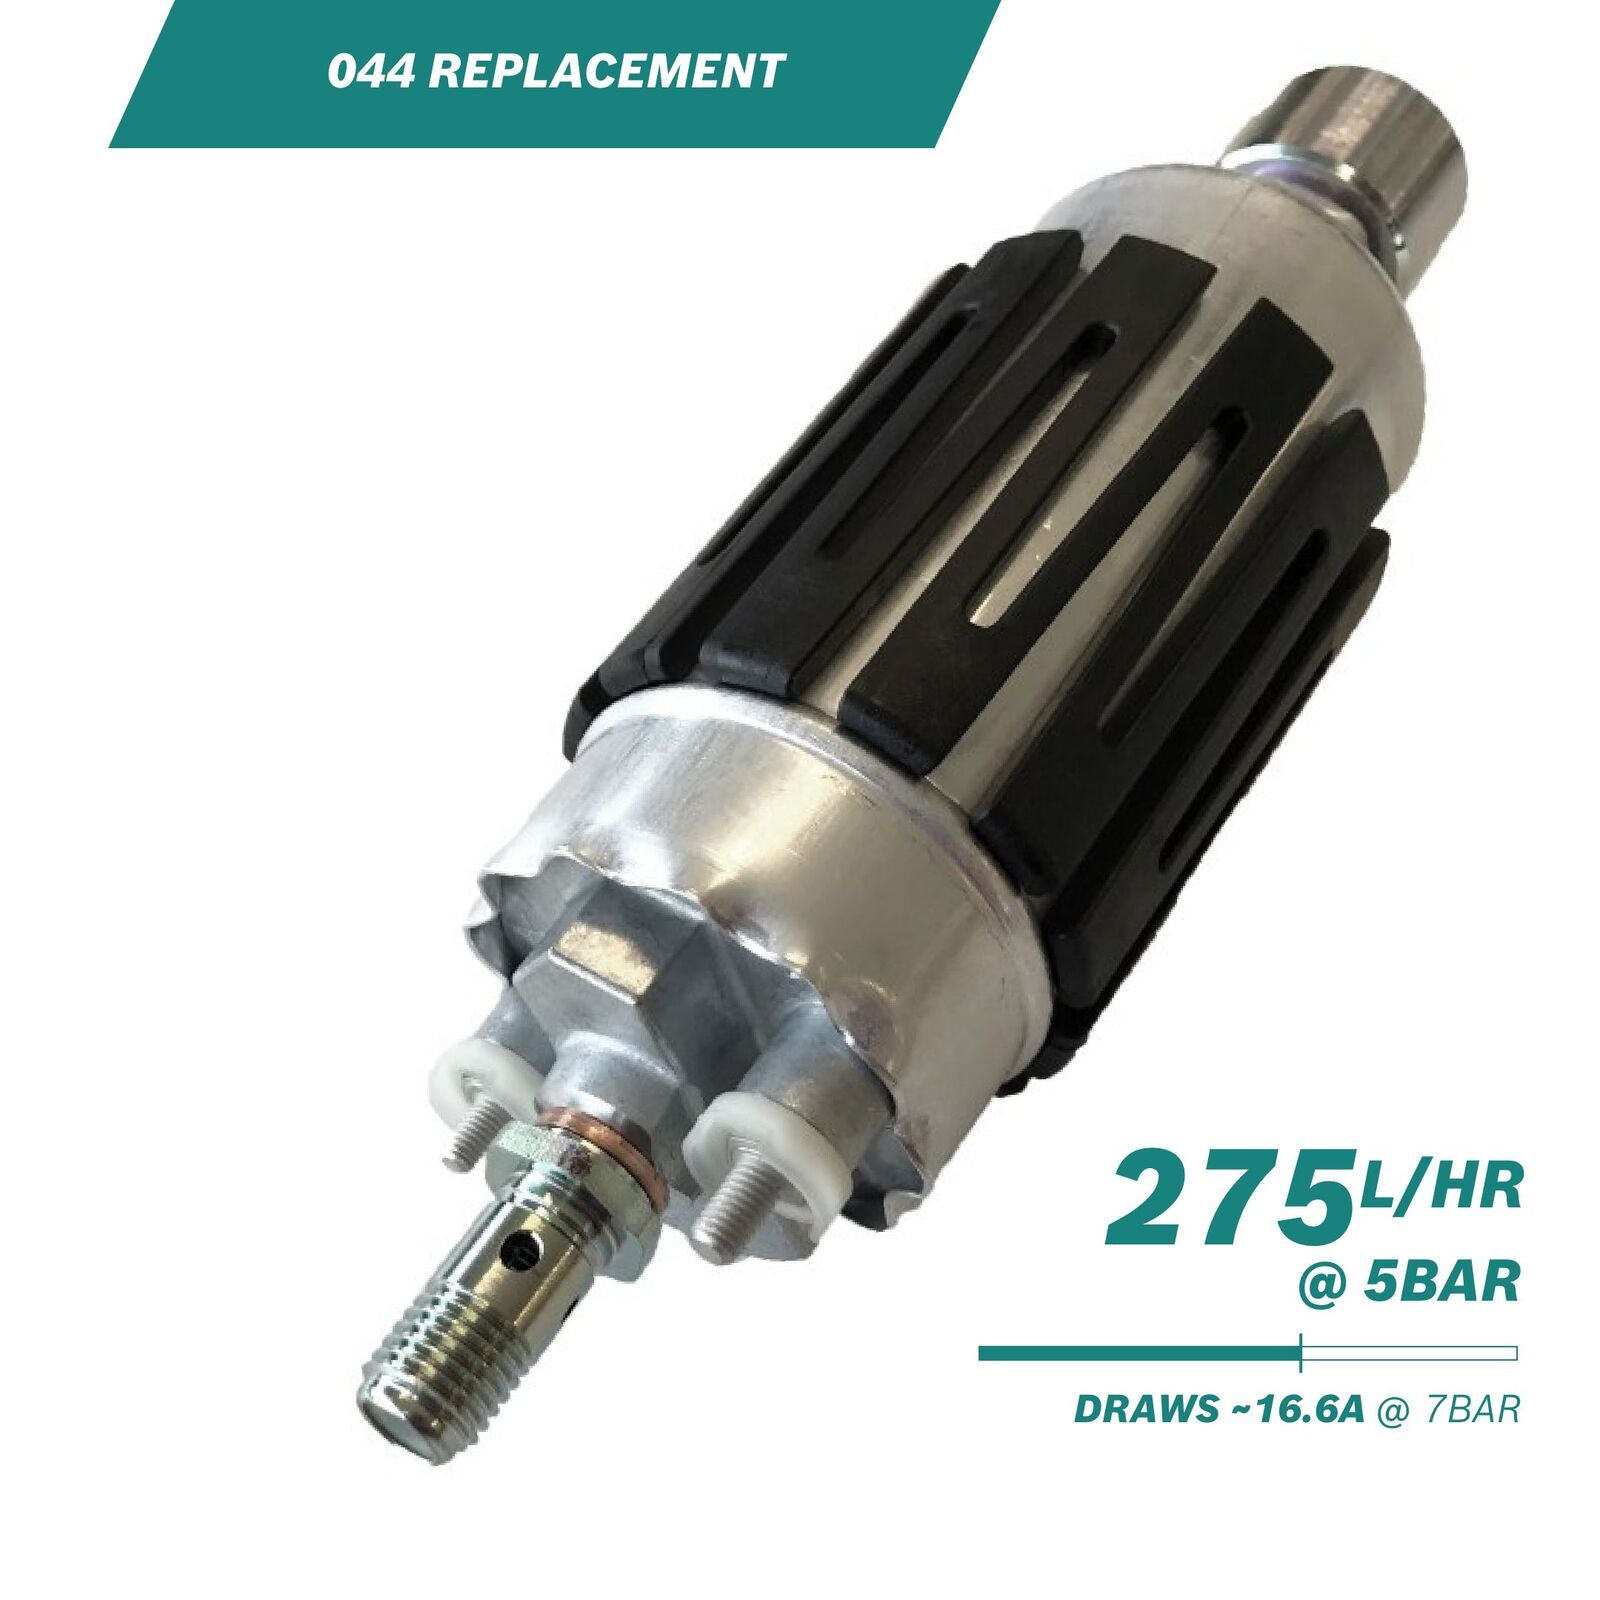 Bosch 044 60mm External Fuel Pump Kit